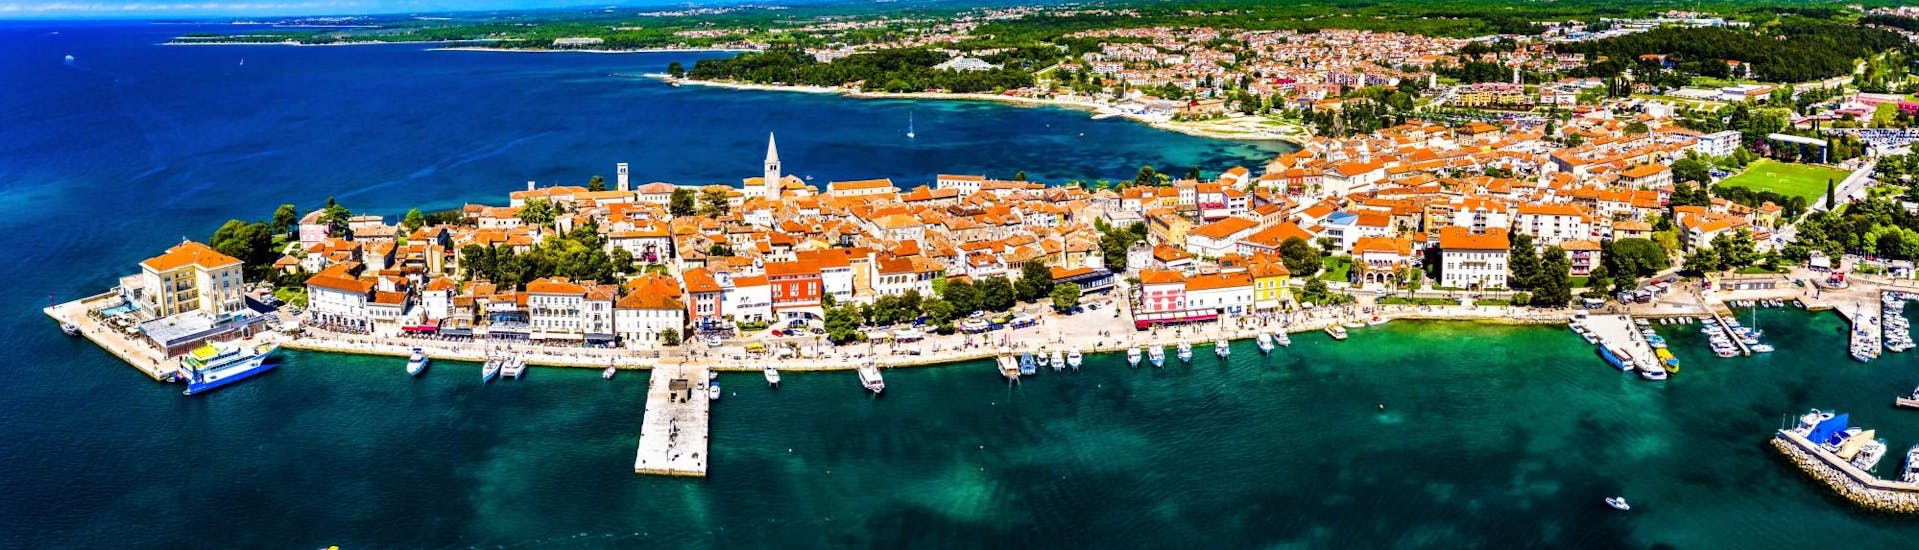 Eine Luftaufnahme der Stadt Poreč, der ideale Ort für einen Bootsverleih, um die Adria zu entdecken.